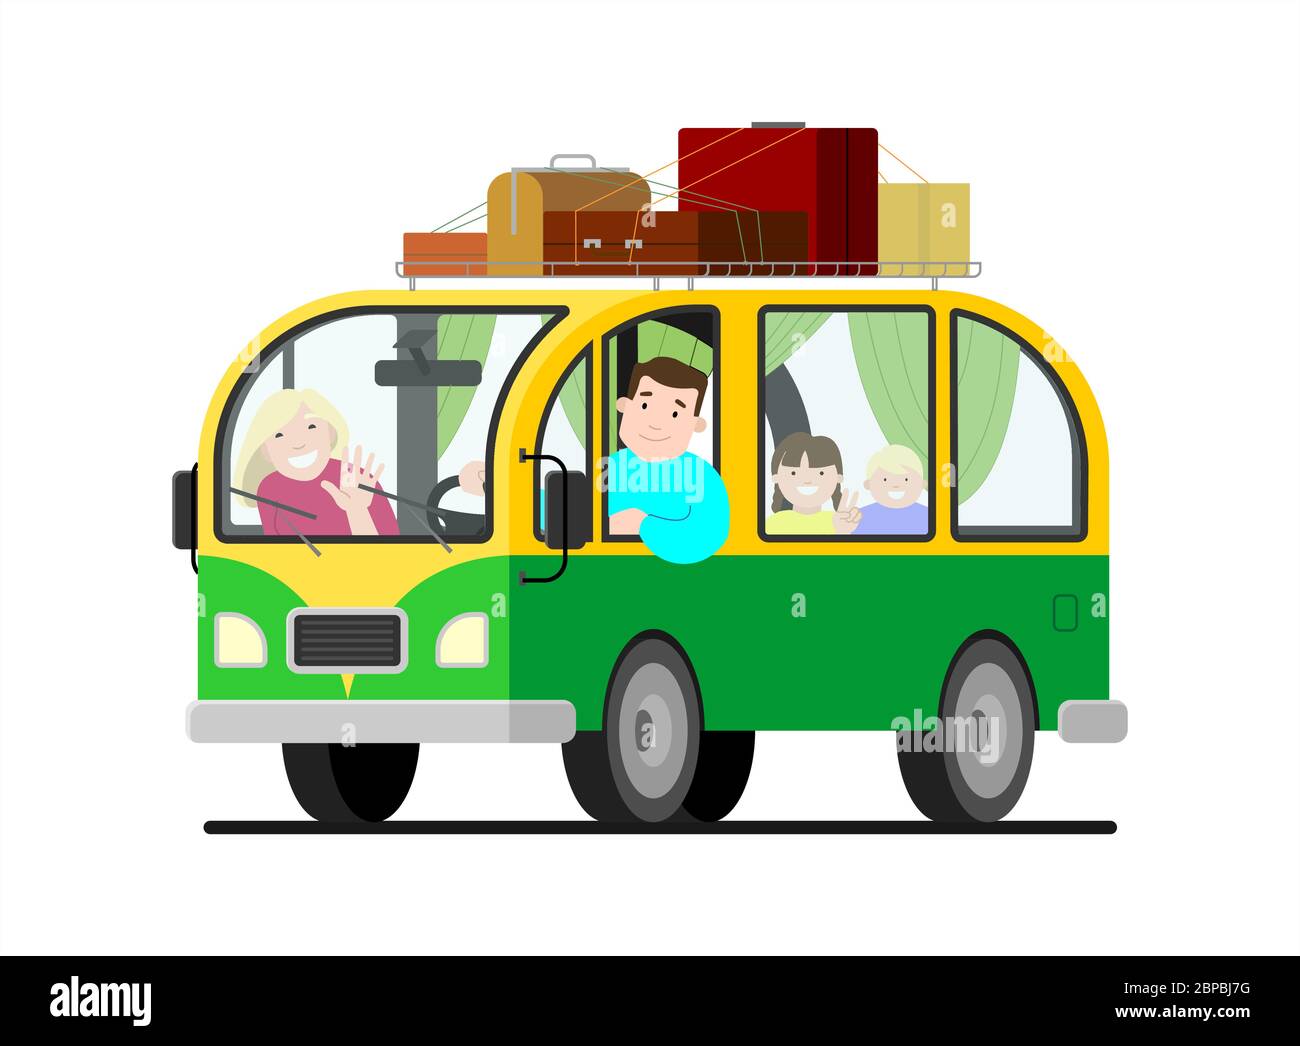 Eine Familienreise im Kleinbus; Vater fährt, Mutter, Kinder; Camping. Glücklich Cartoon Menschen Kinder in einem Retro-Minivan. Roadtrip, Sommerurlaub. Dach r Stock Vektor